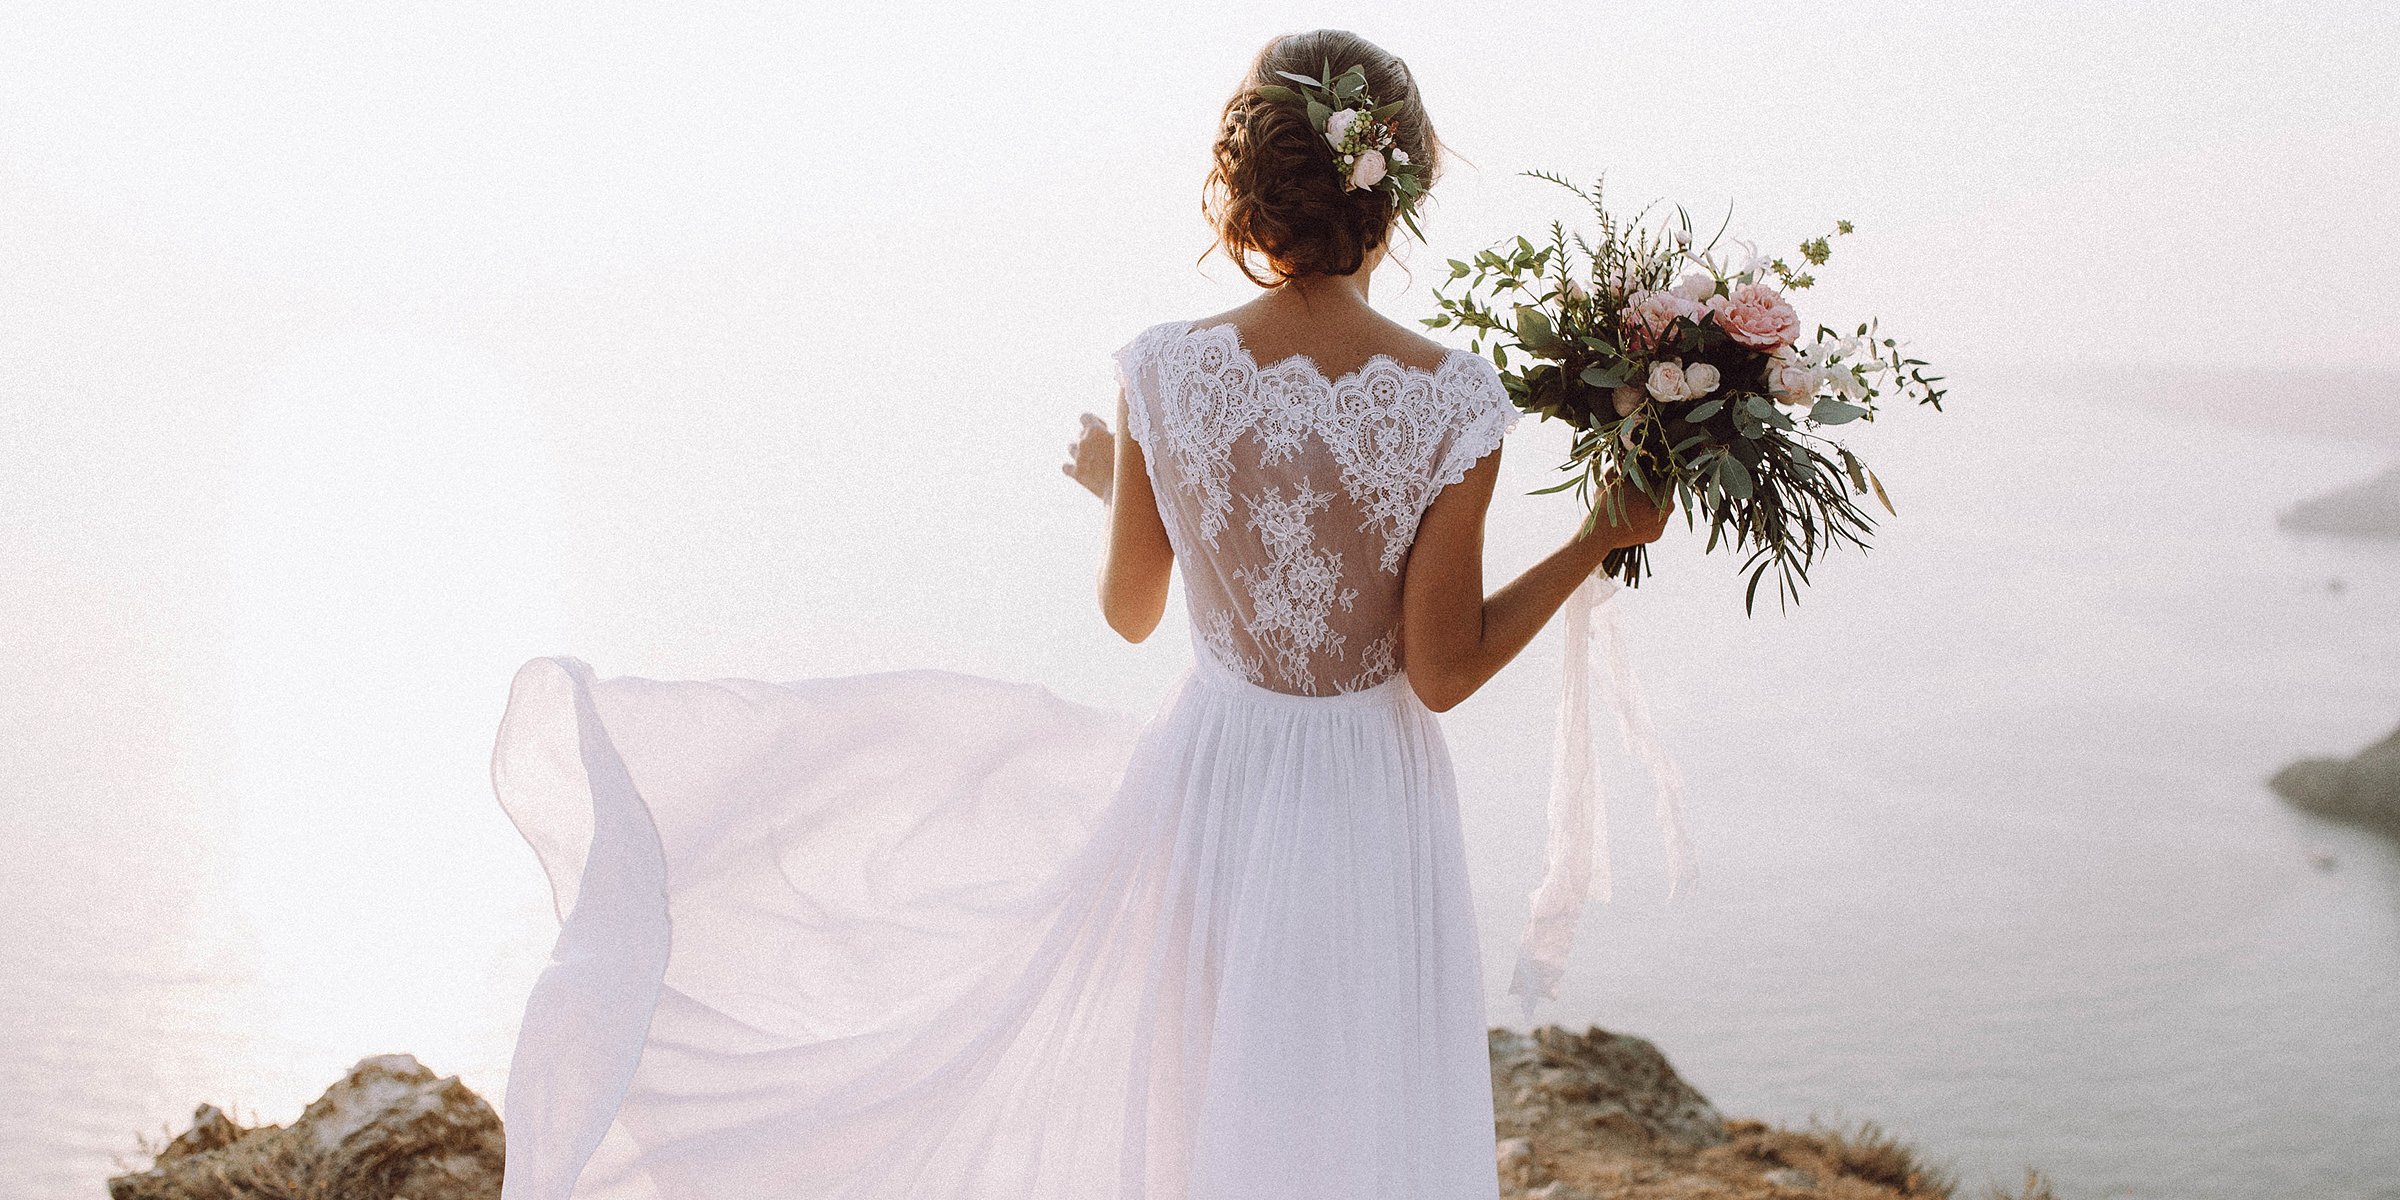 Woman in a wedding dress | Source: Shutterstock